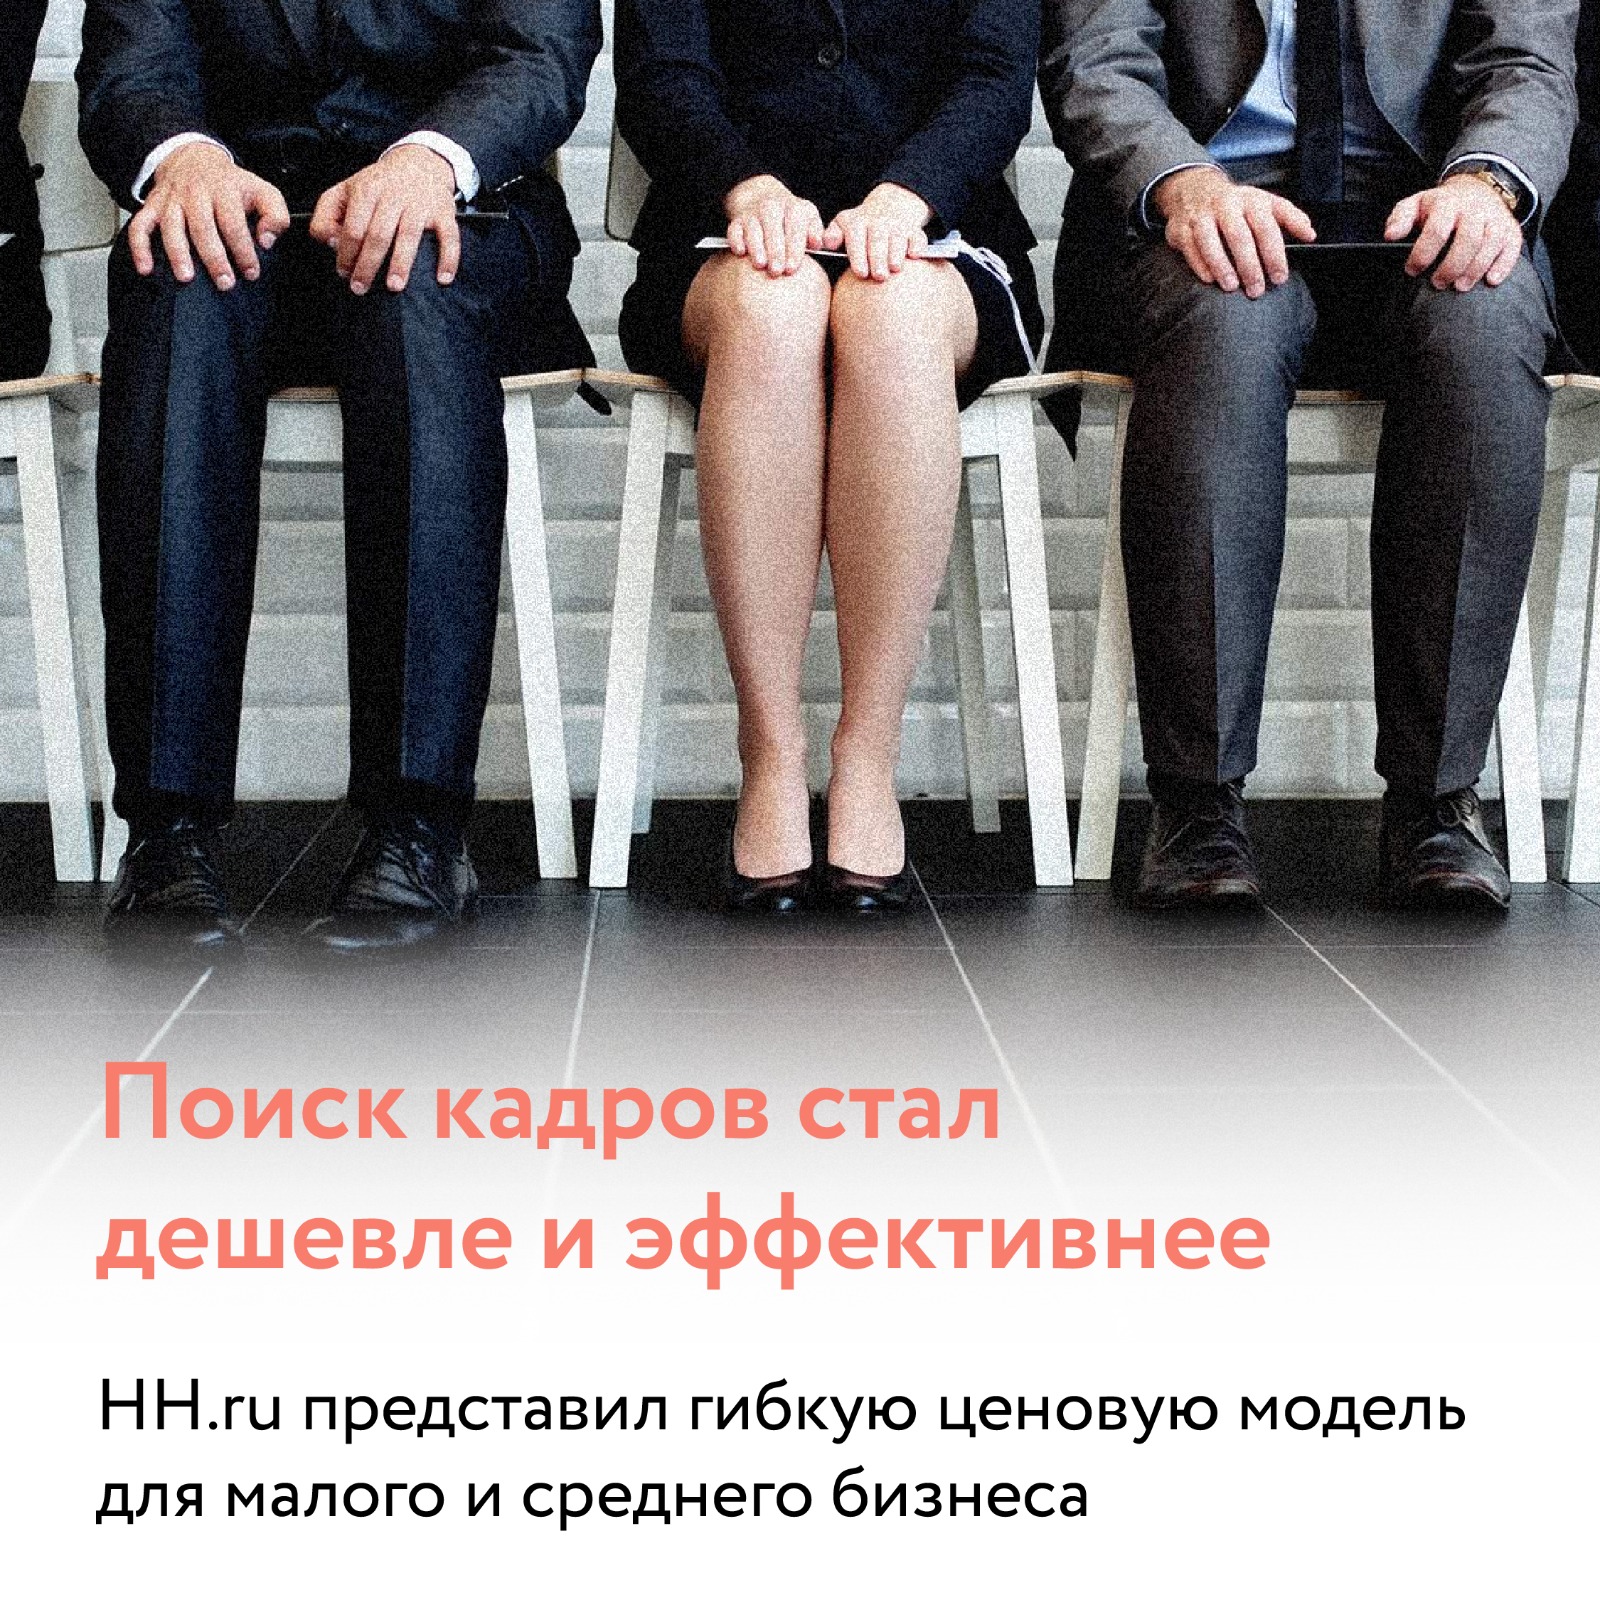 HeadHunter (hh.ru) поддержит компании малого и среднего бизнеса